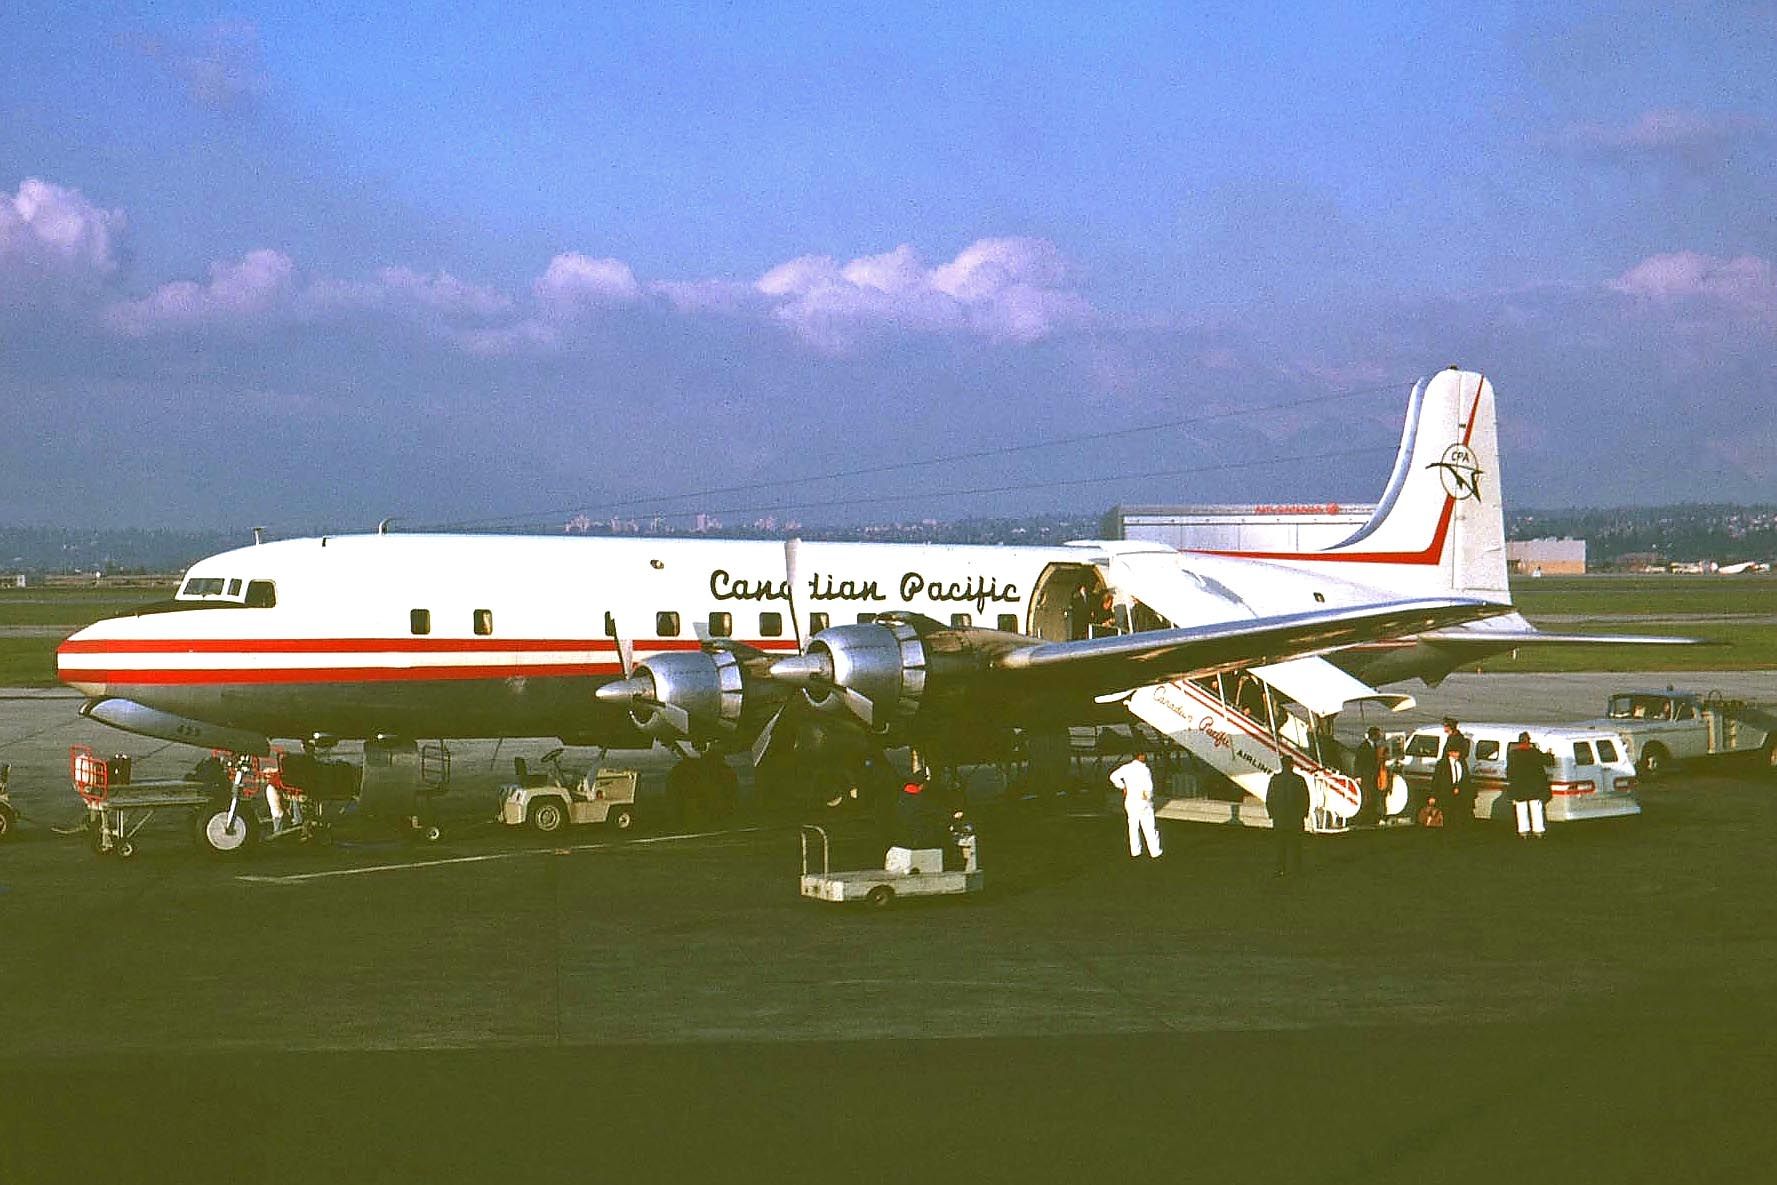 CF-CZQ - DC-6B - Canadian_Pacific at YVR